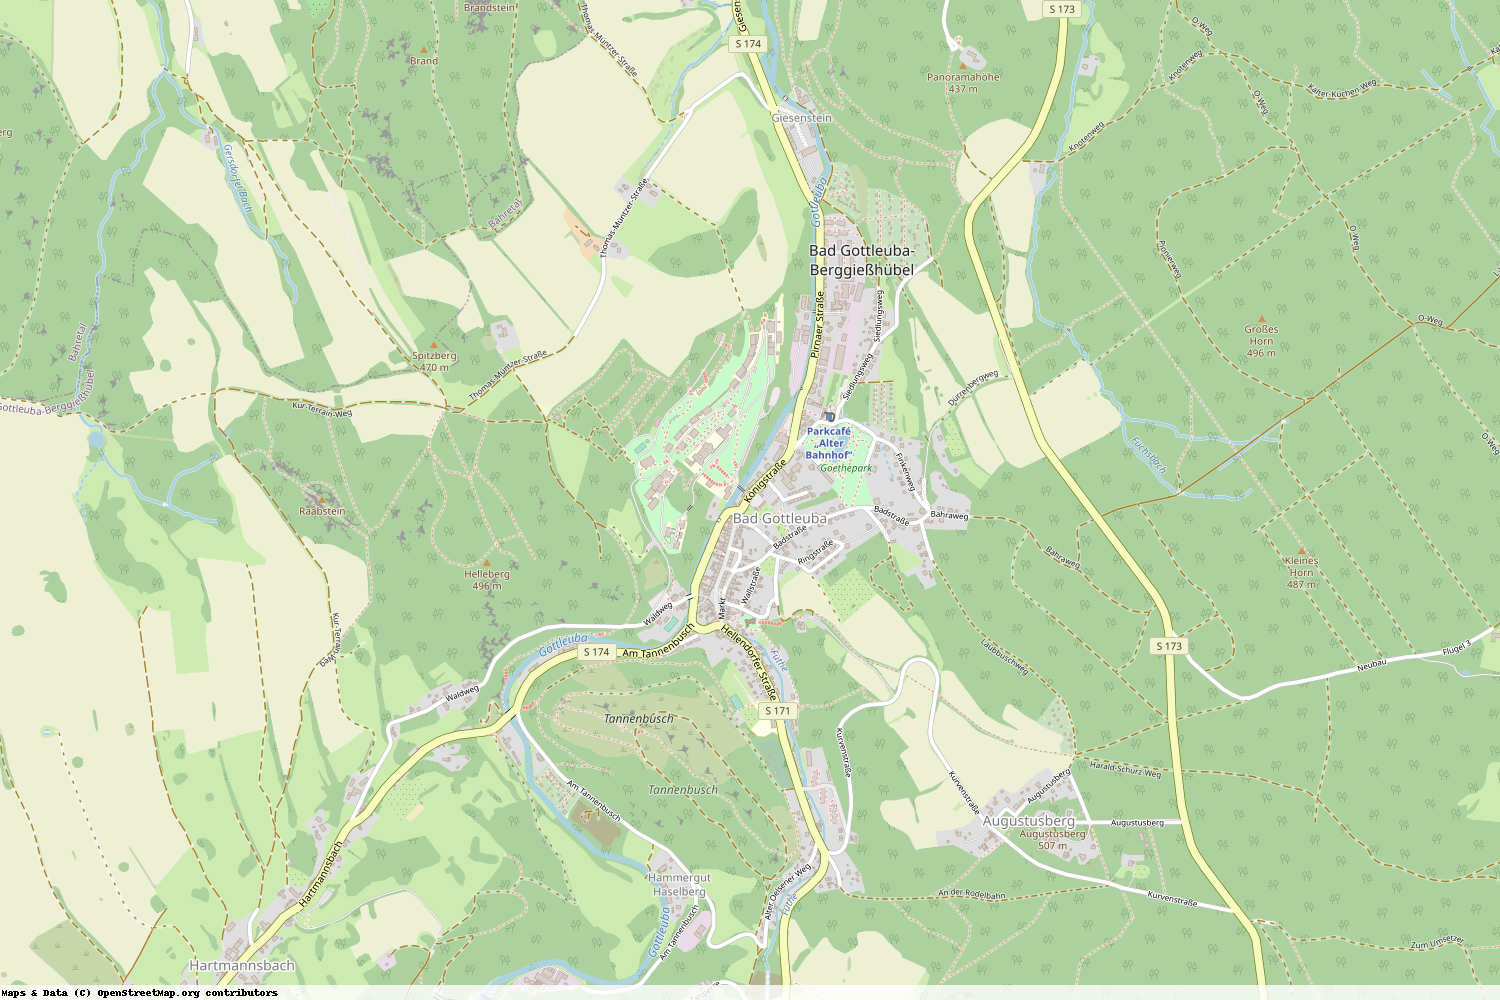 Ist gerade Stromausfall in Sachsen - Sächsische Schweiz-Osterzgebirge - Bad Gottleuba-Berggießhübel?